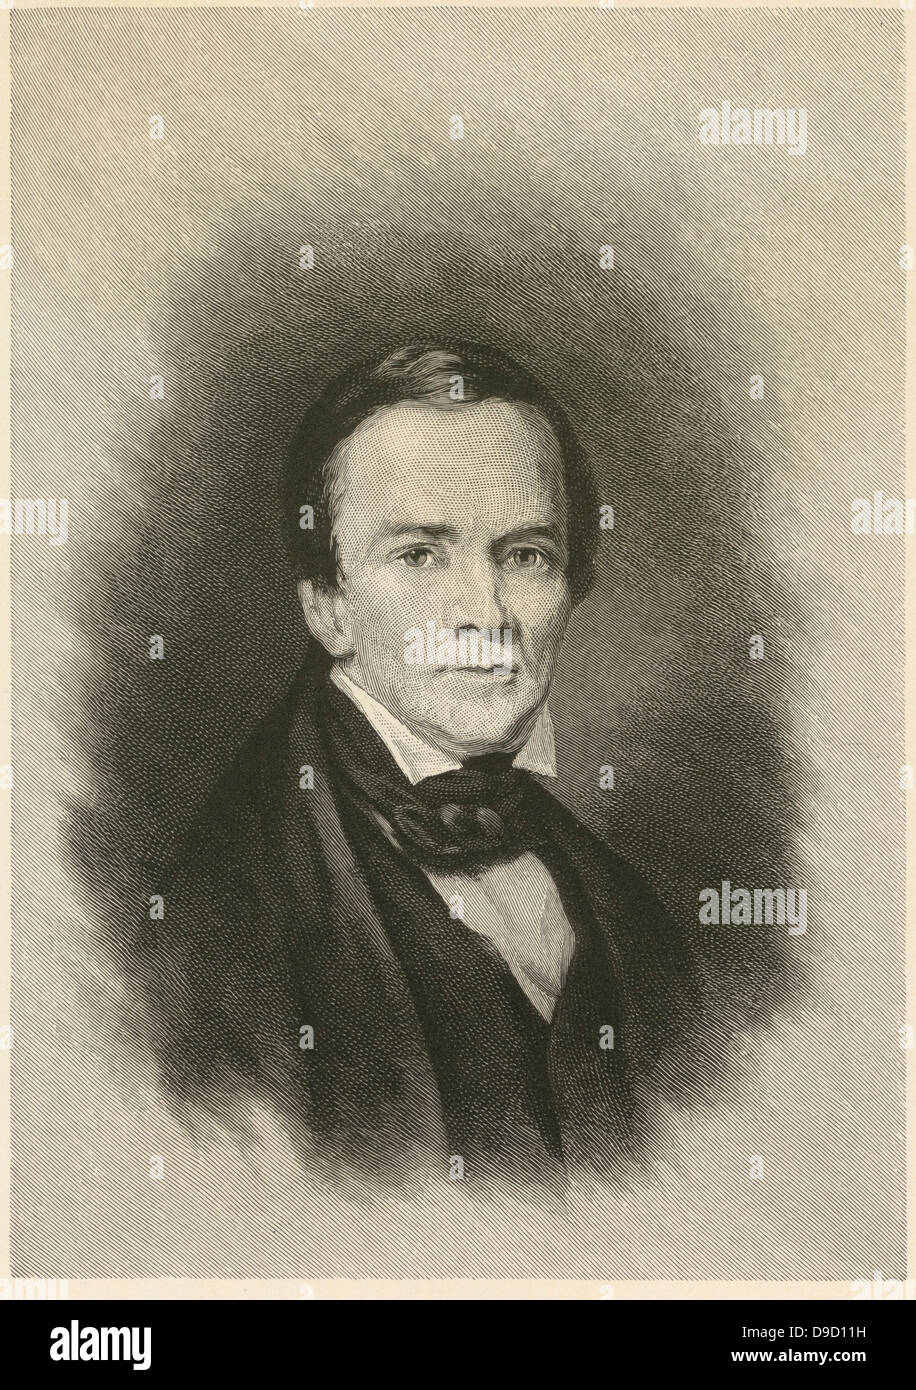 George Catlin (1796-1872) amerikanischer atist, Reisenden und Autor, berühmt für seine Porträts von Indianern des alten Westens. Viele seiner Bilder sind jetzt in der Smithsonian Institution. Gravur, 1896. Stockfoto